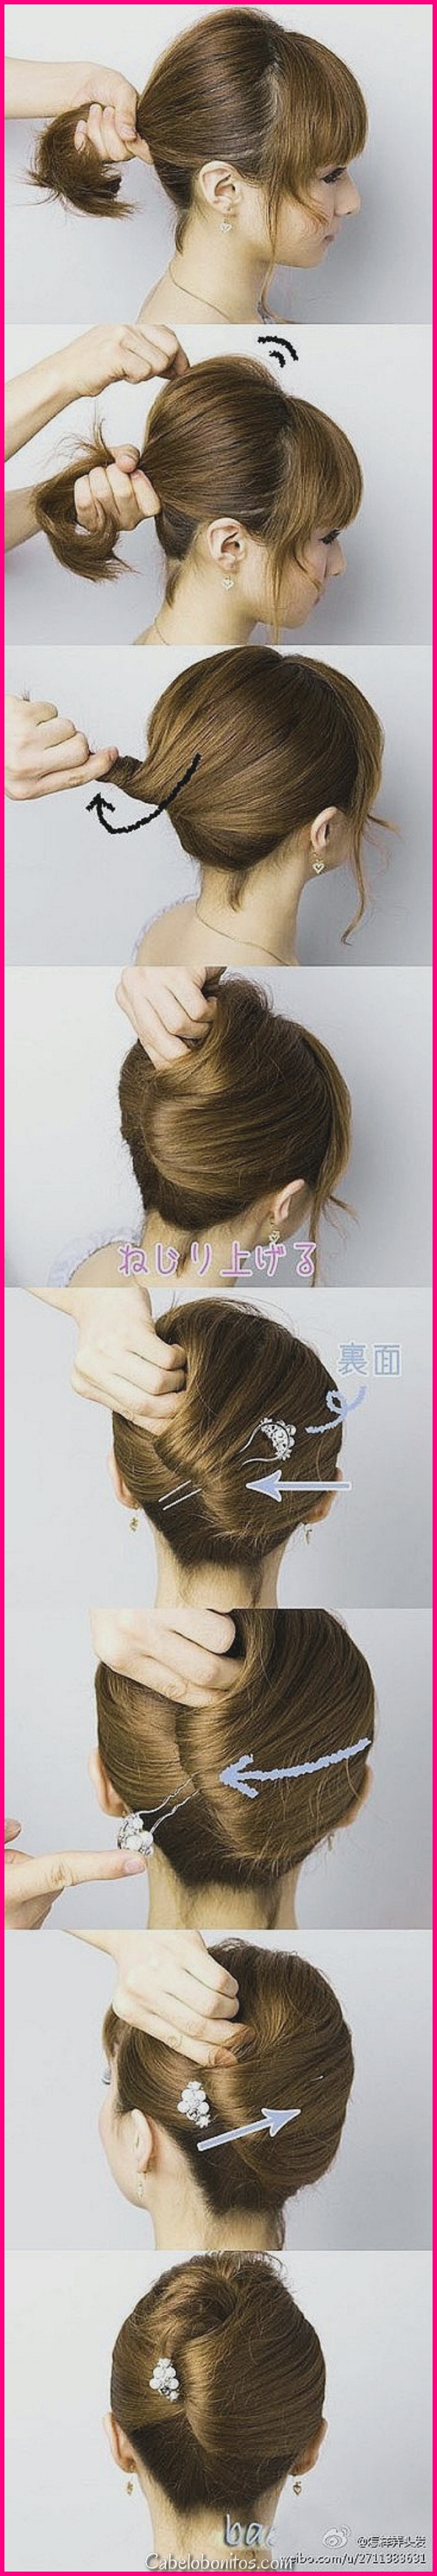 40 penteados fáceis (sem cortes de cabelo) para mulheres com cabelo limitado - uma vez que estilo cortes de cabelo curtos